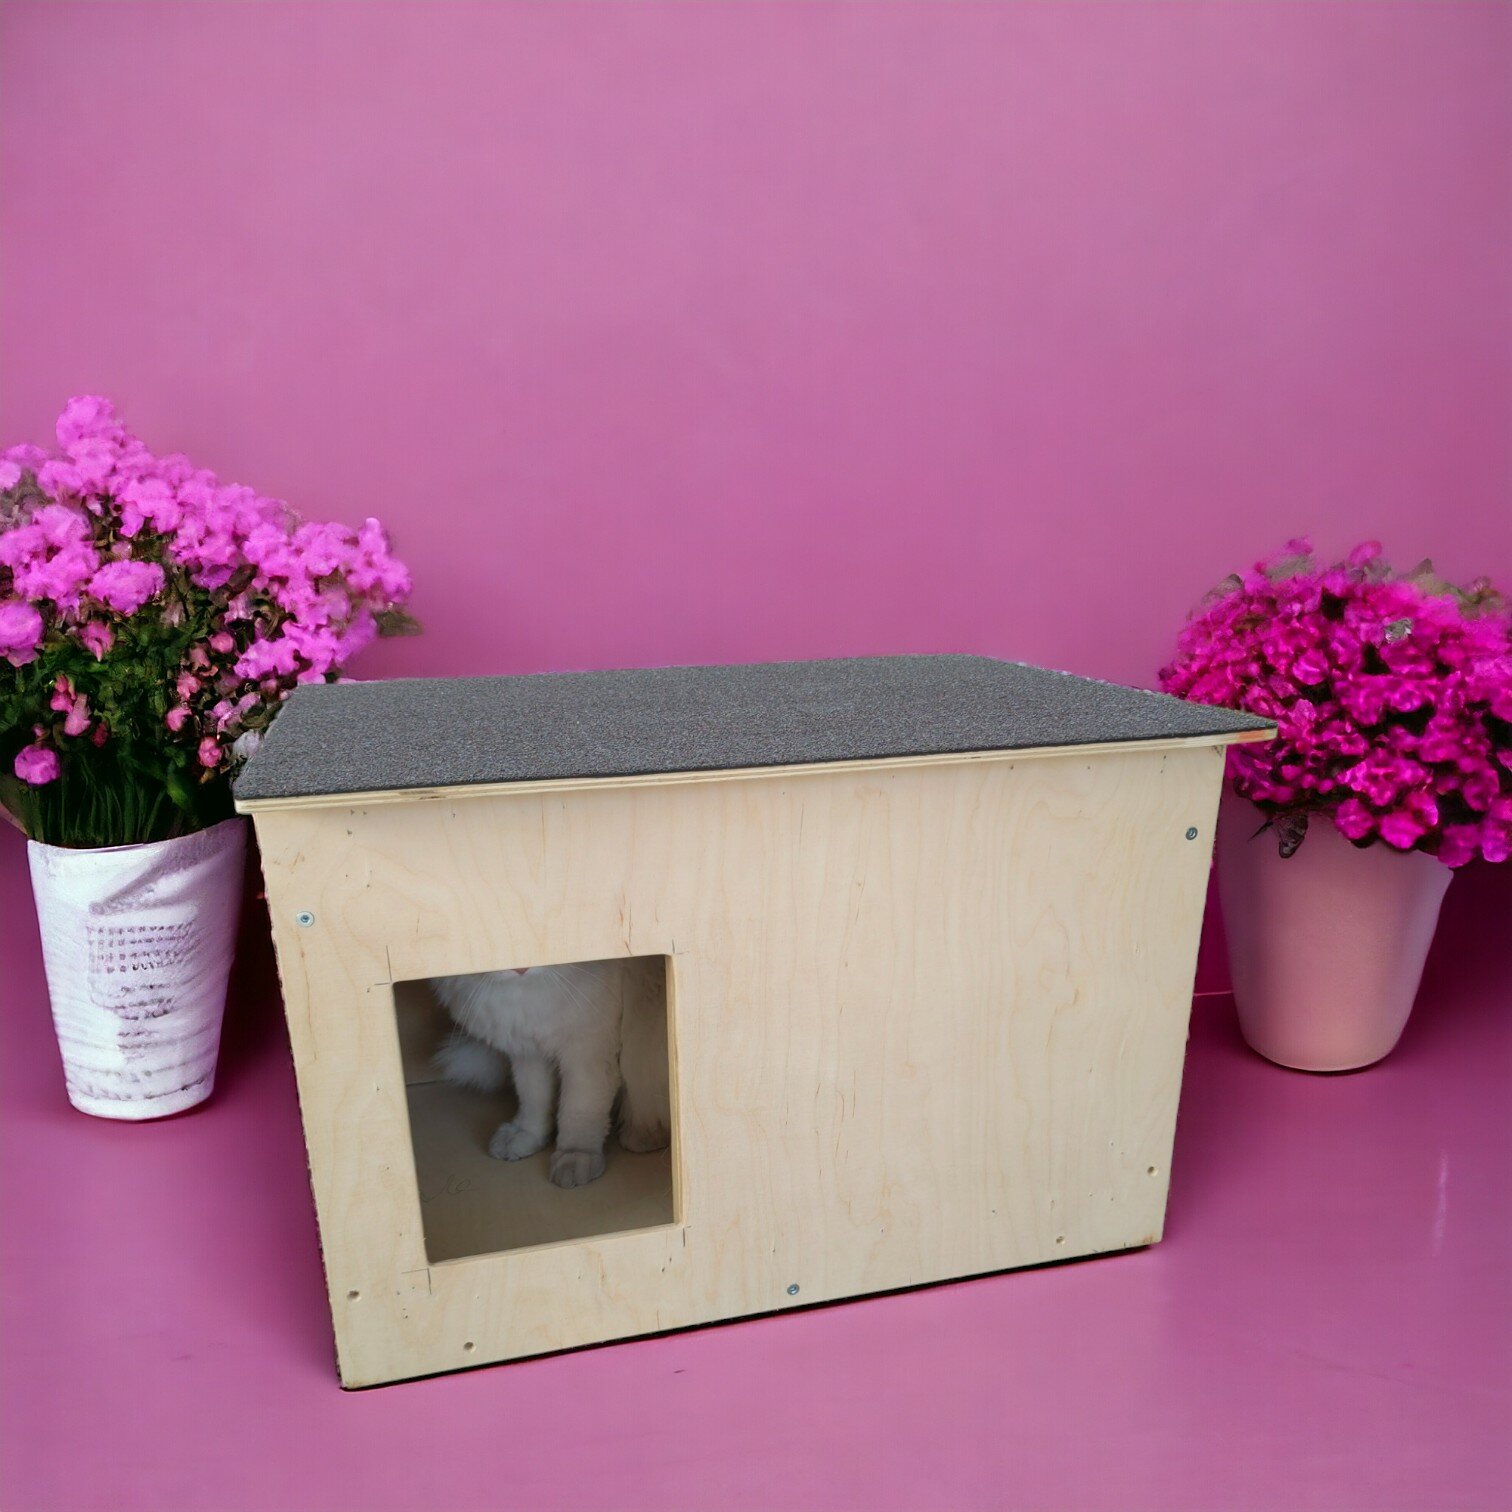 Утепленная будка для собаки и кошки "Домик М2" от Peach